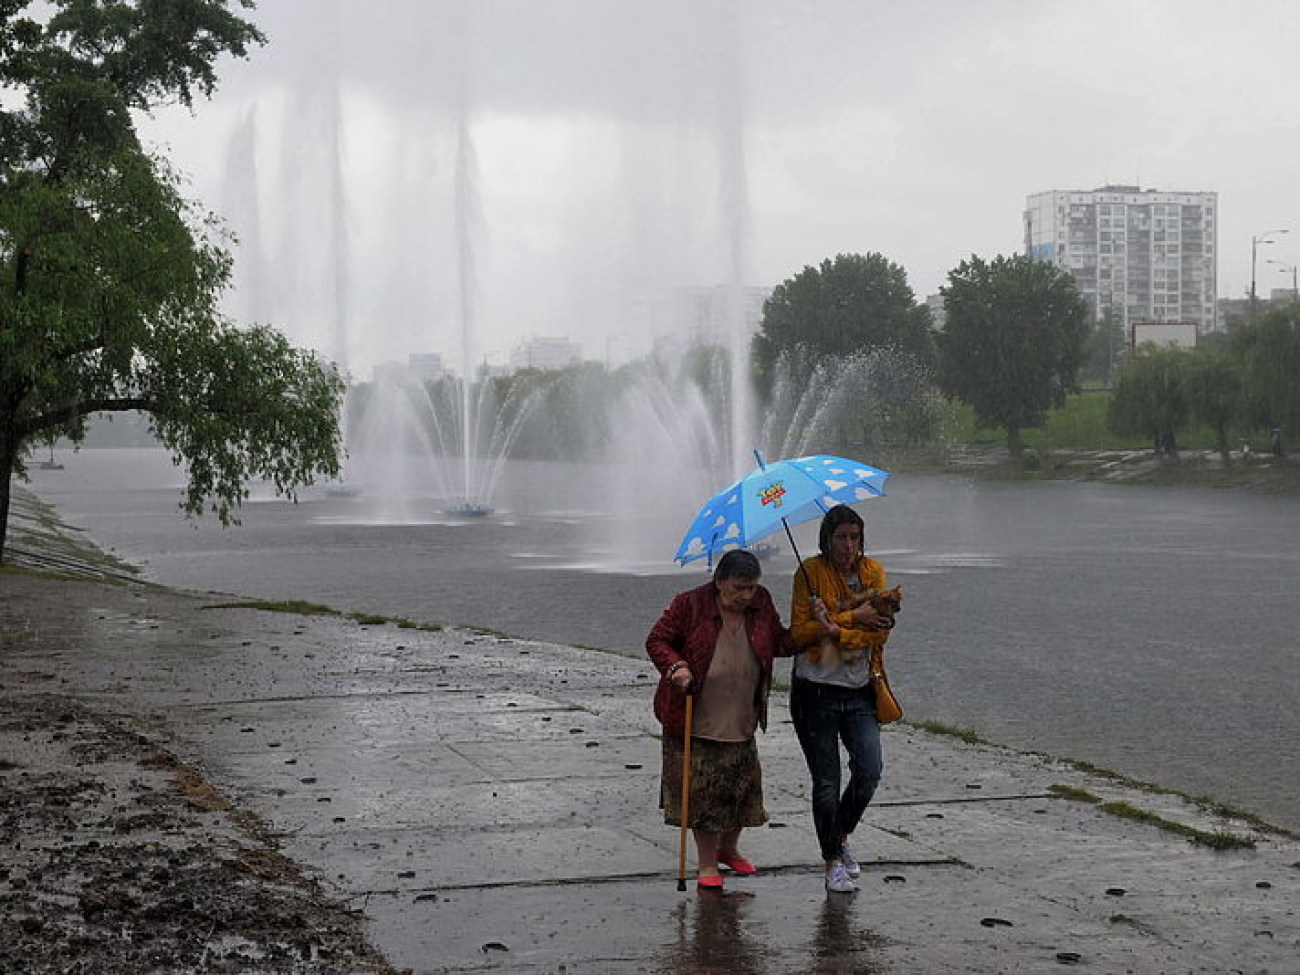 На Русановском канале в столице открыли 30-метровый фонтан